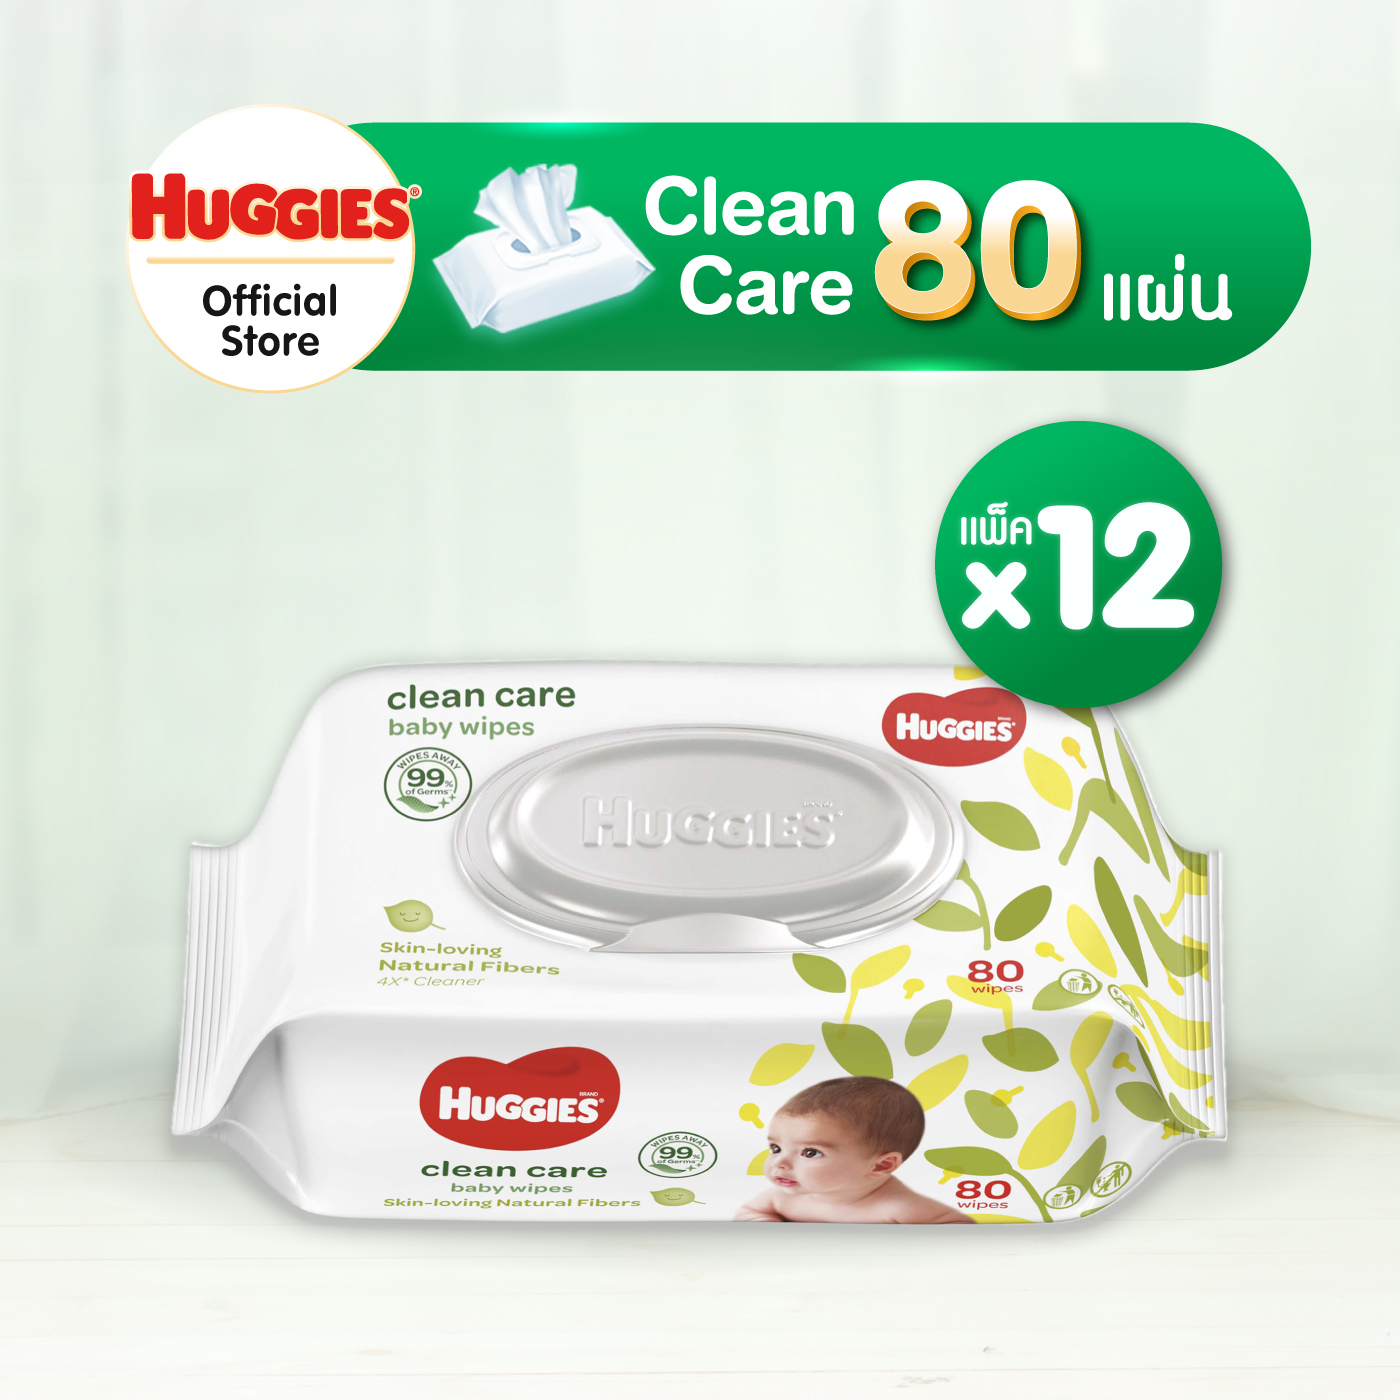 Huggies Clean Care Baby wipes ทิชชู่เปียก สำหรับเด็ก ฮักกี้ส์ คลีน แคร์ 80 แผ่น 12 แพ็ค